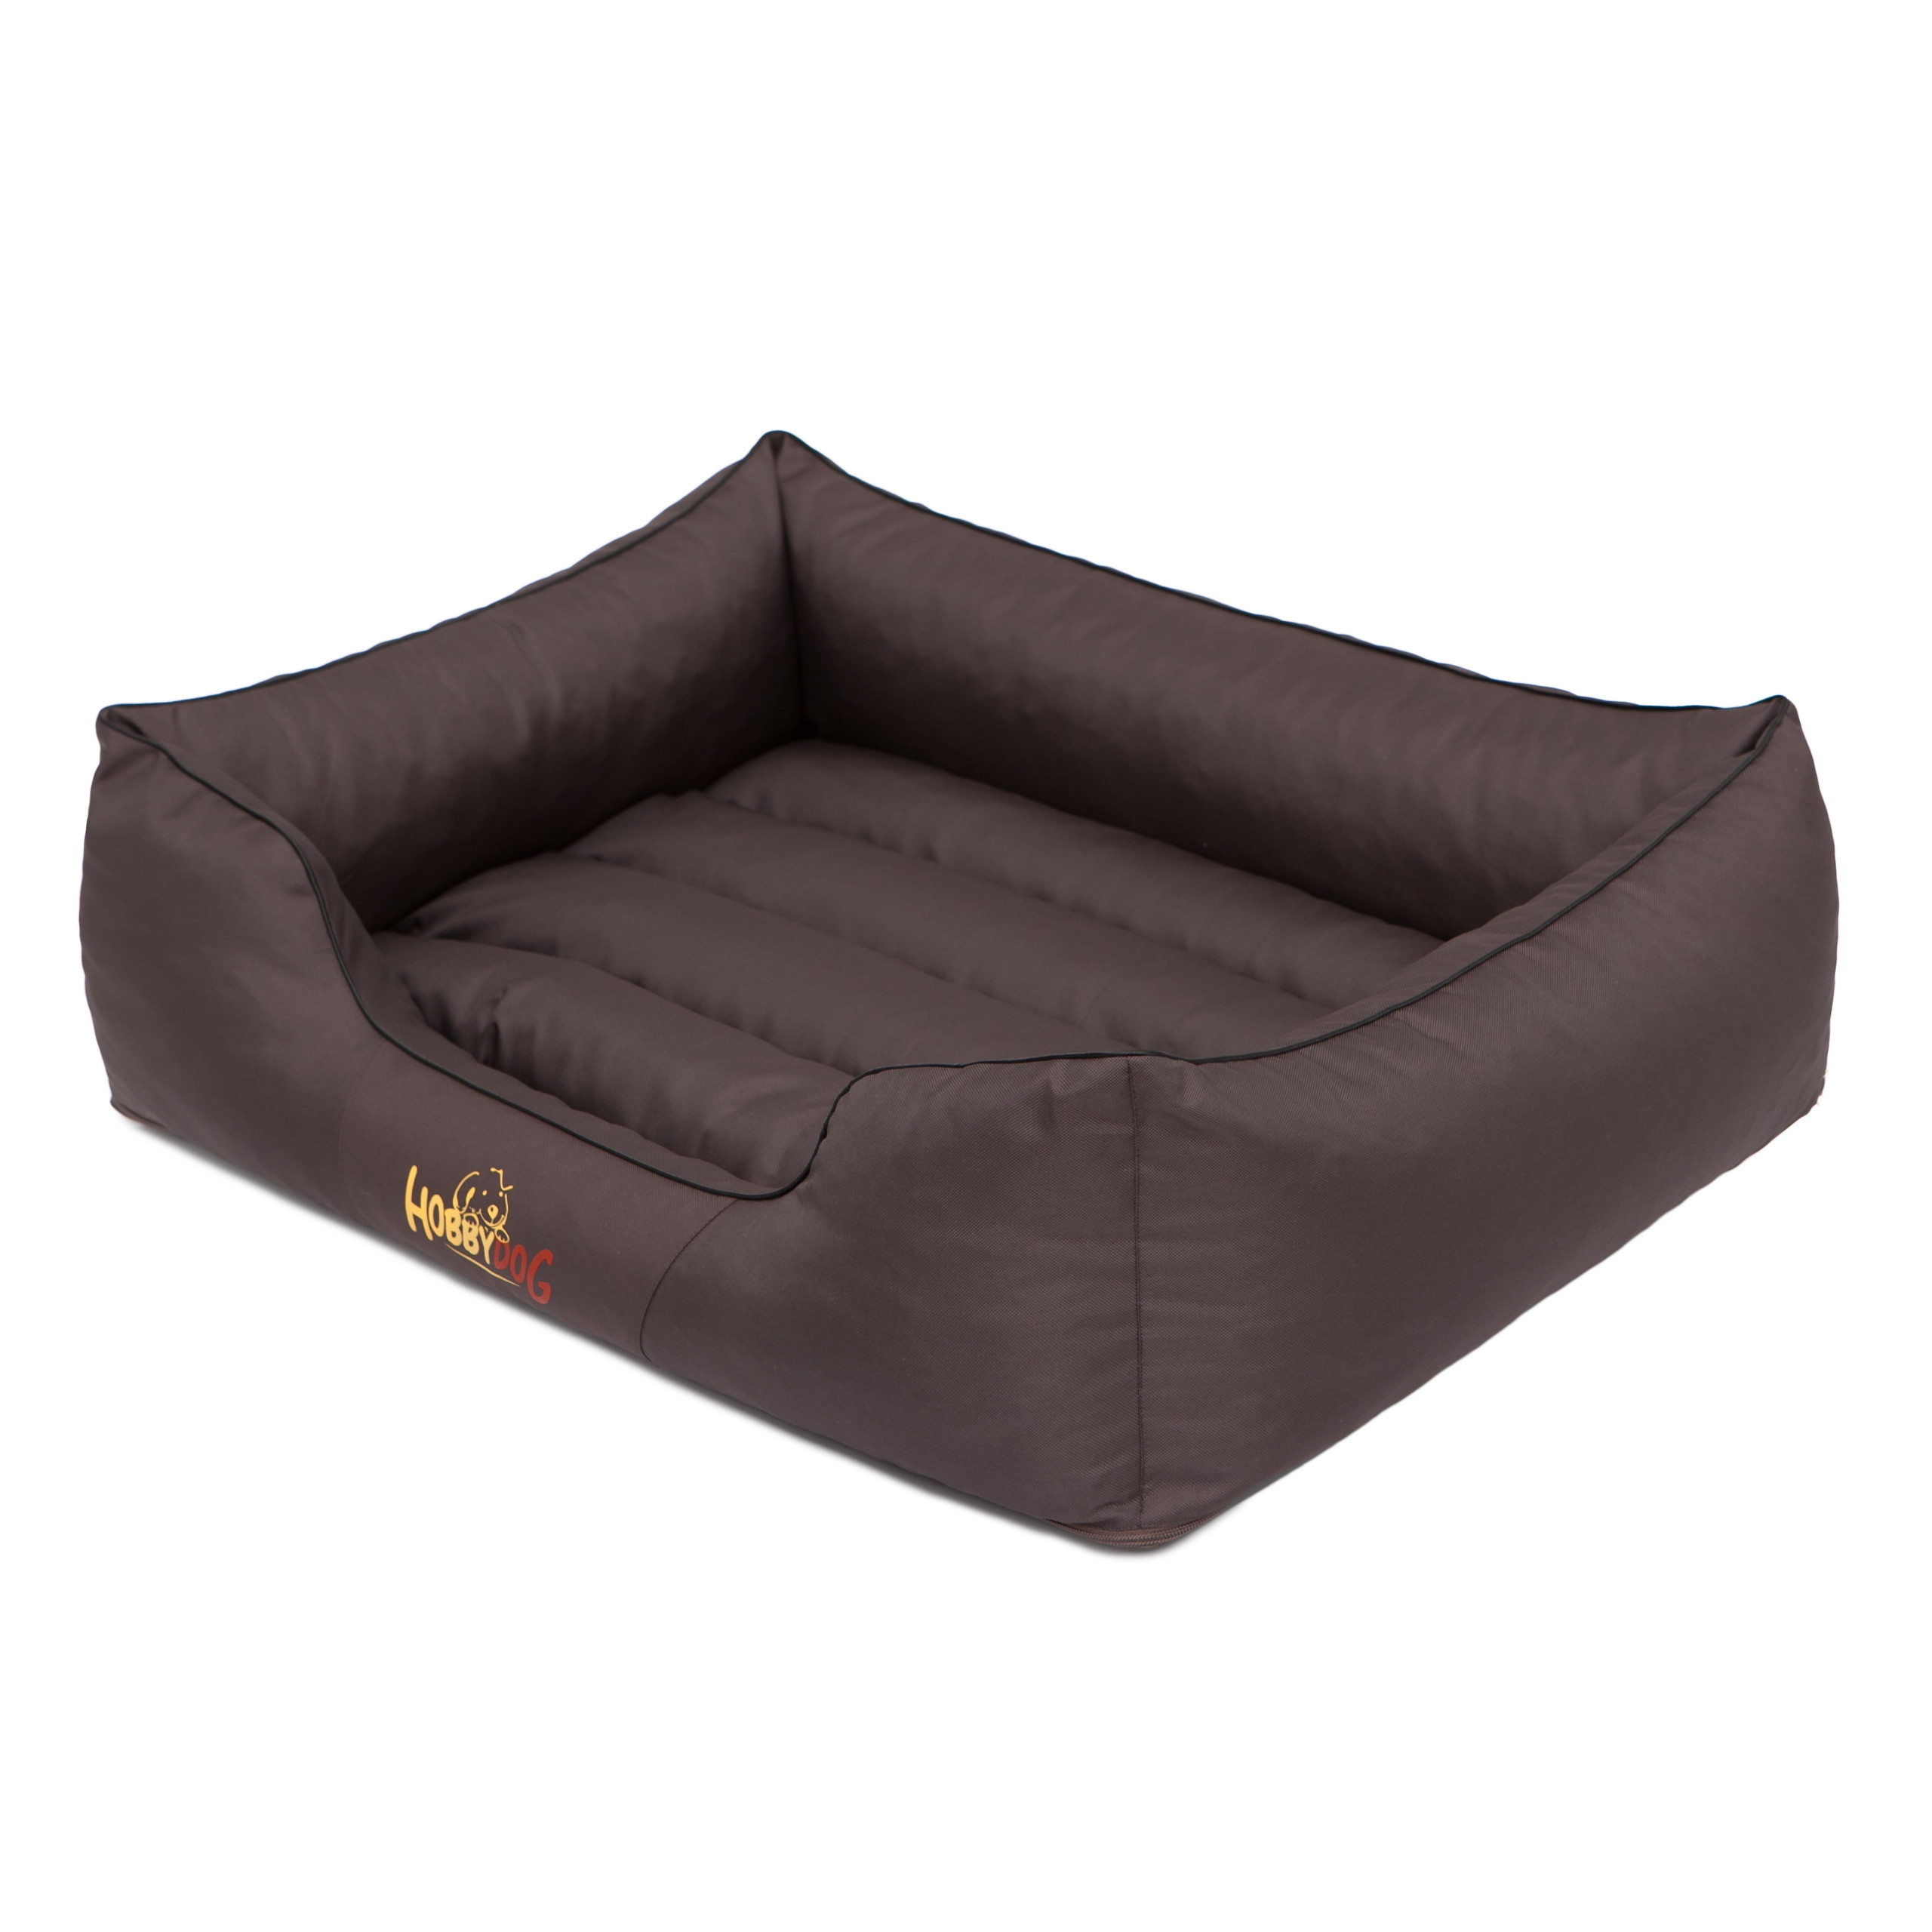 Кровать для собаки, диван Hobbydog, XXL: 110x90 см